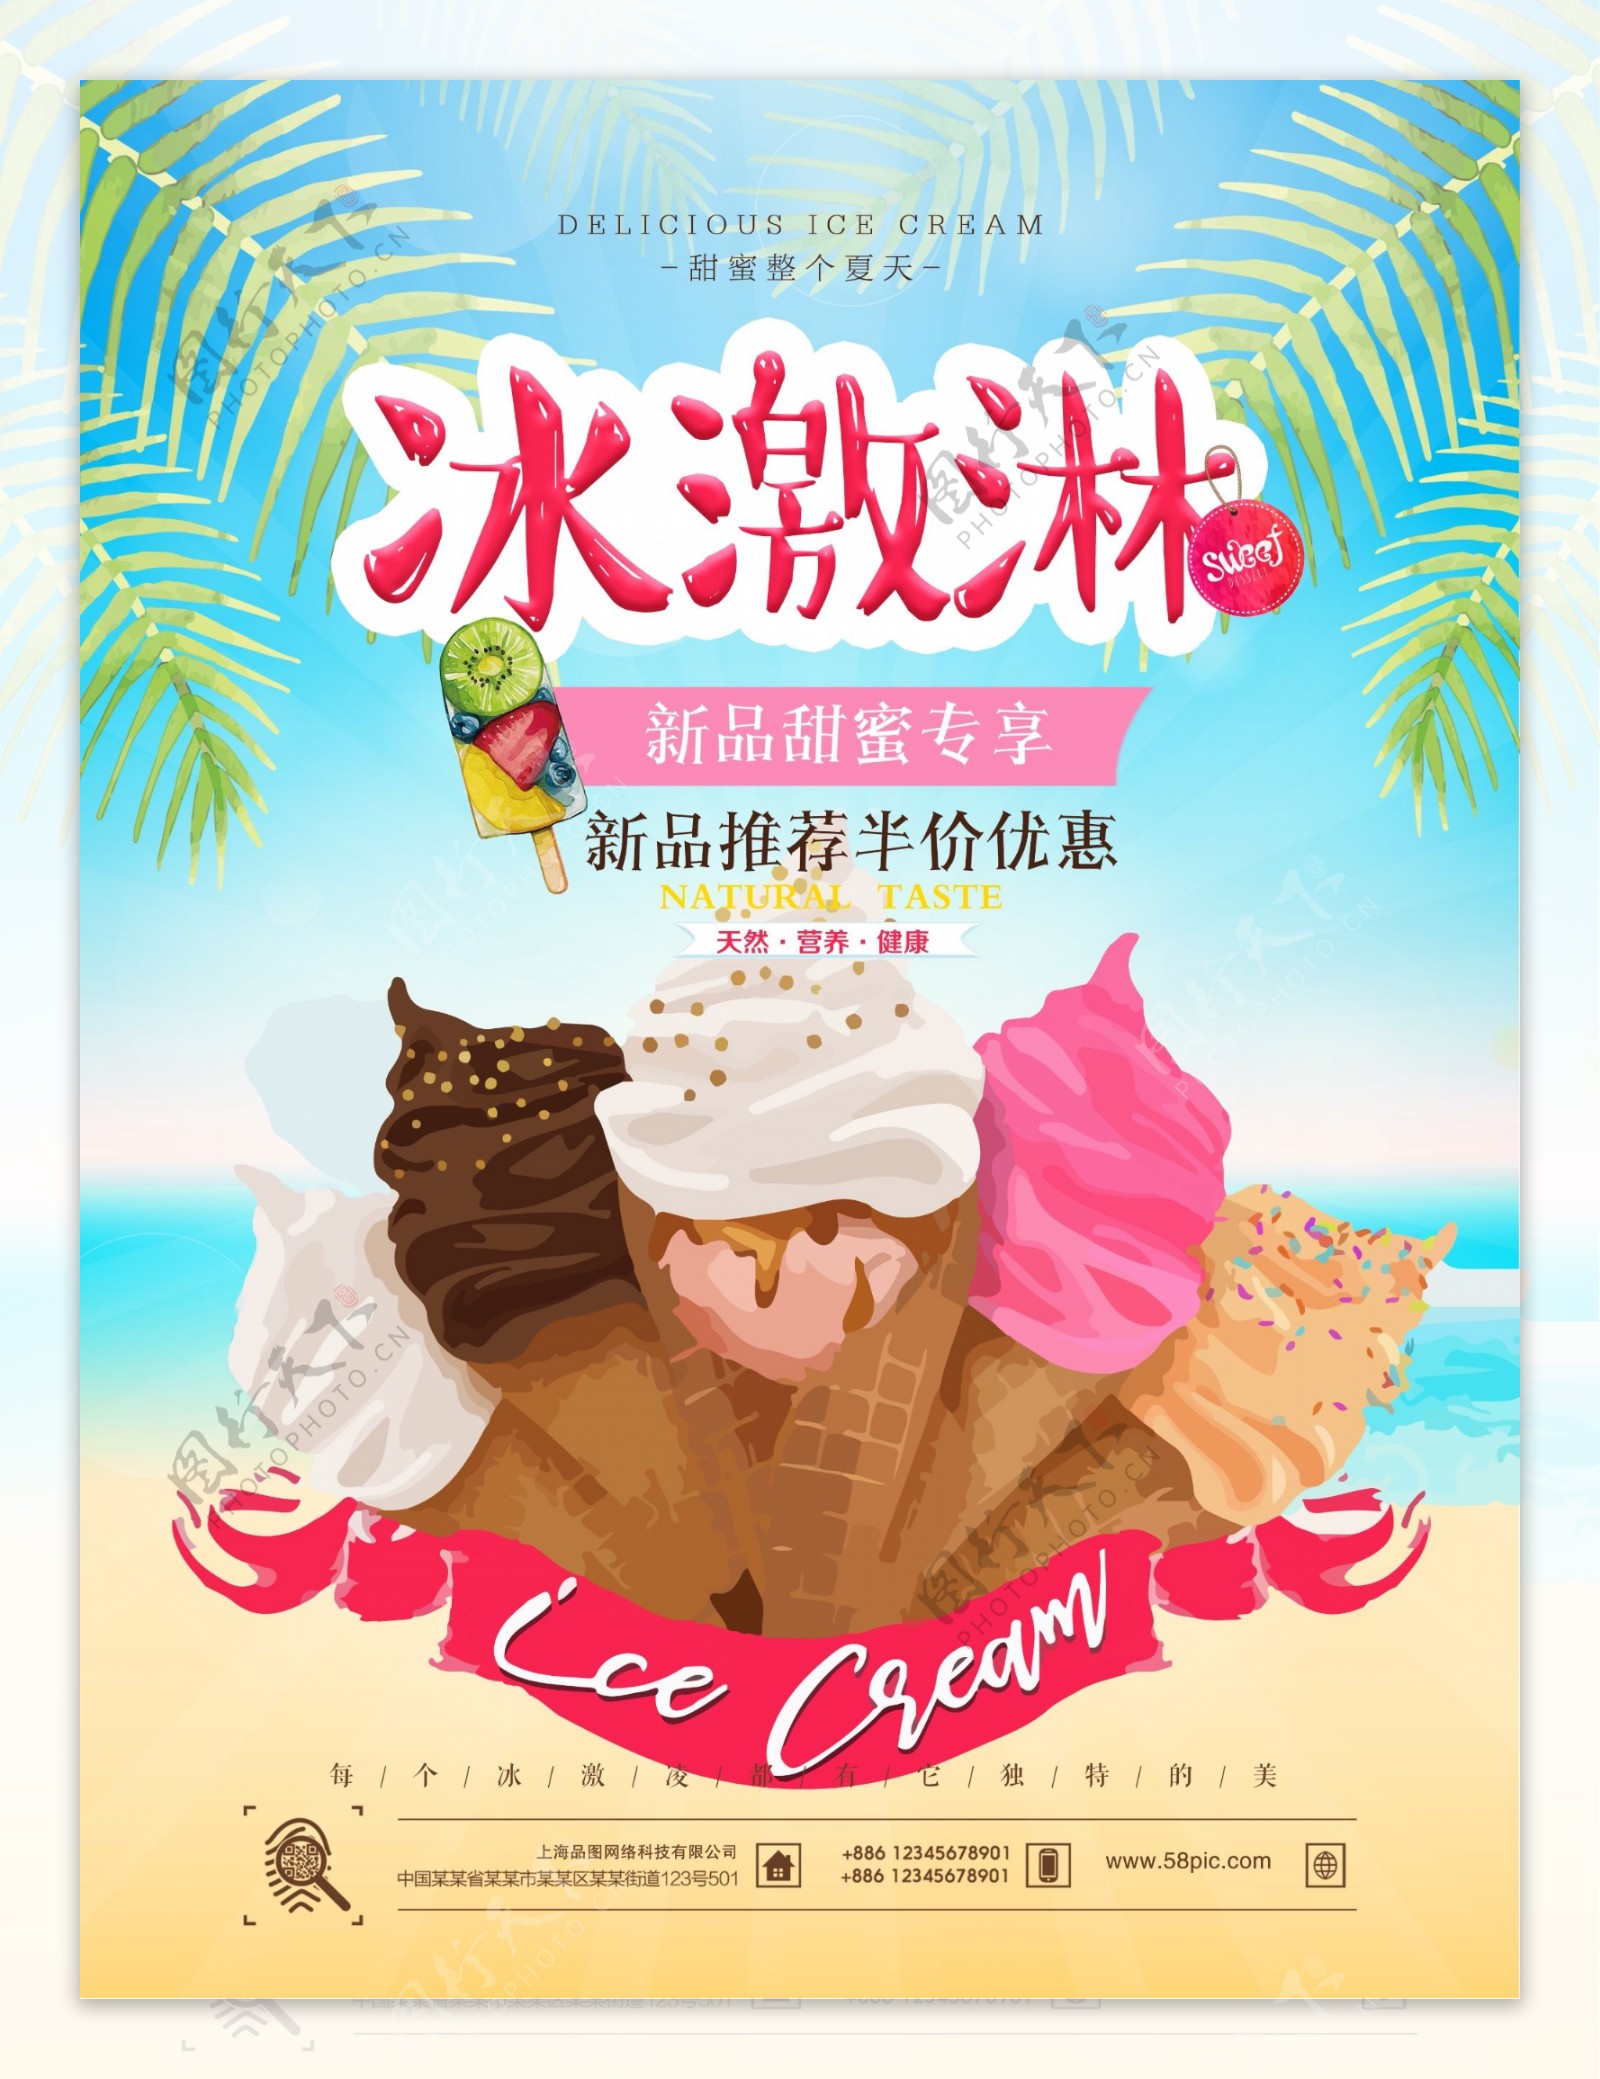 夏日夏季冰爽清新冰激凌甜品海报